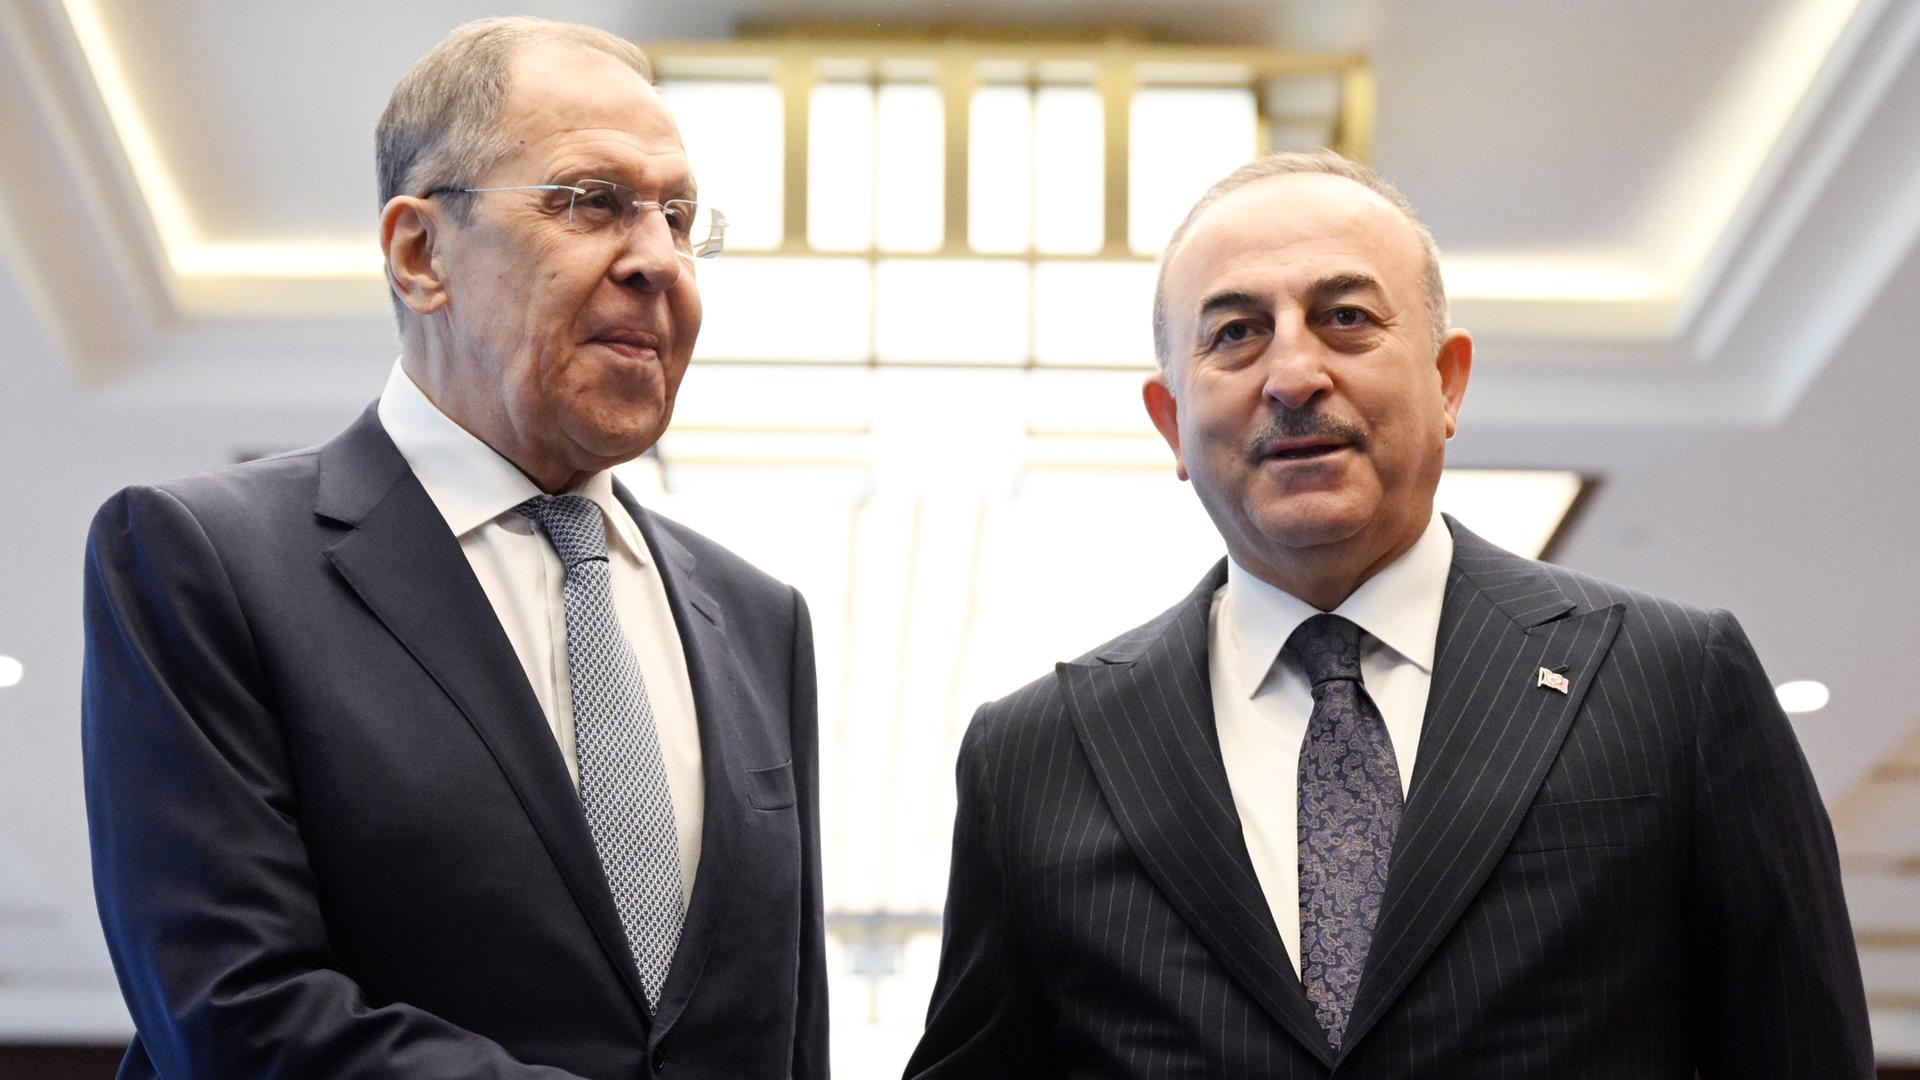 Der russische Außenminister Lawrow steht neben seinem türkischen Kollegen Cavusoglu, sie schütteln sich die Hände und schauen in unterschiedliche Richtungen, beide tragen dunkle Anzüge, weiße Hemden und Krawatten.